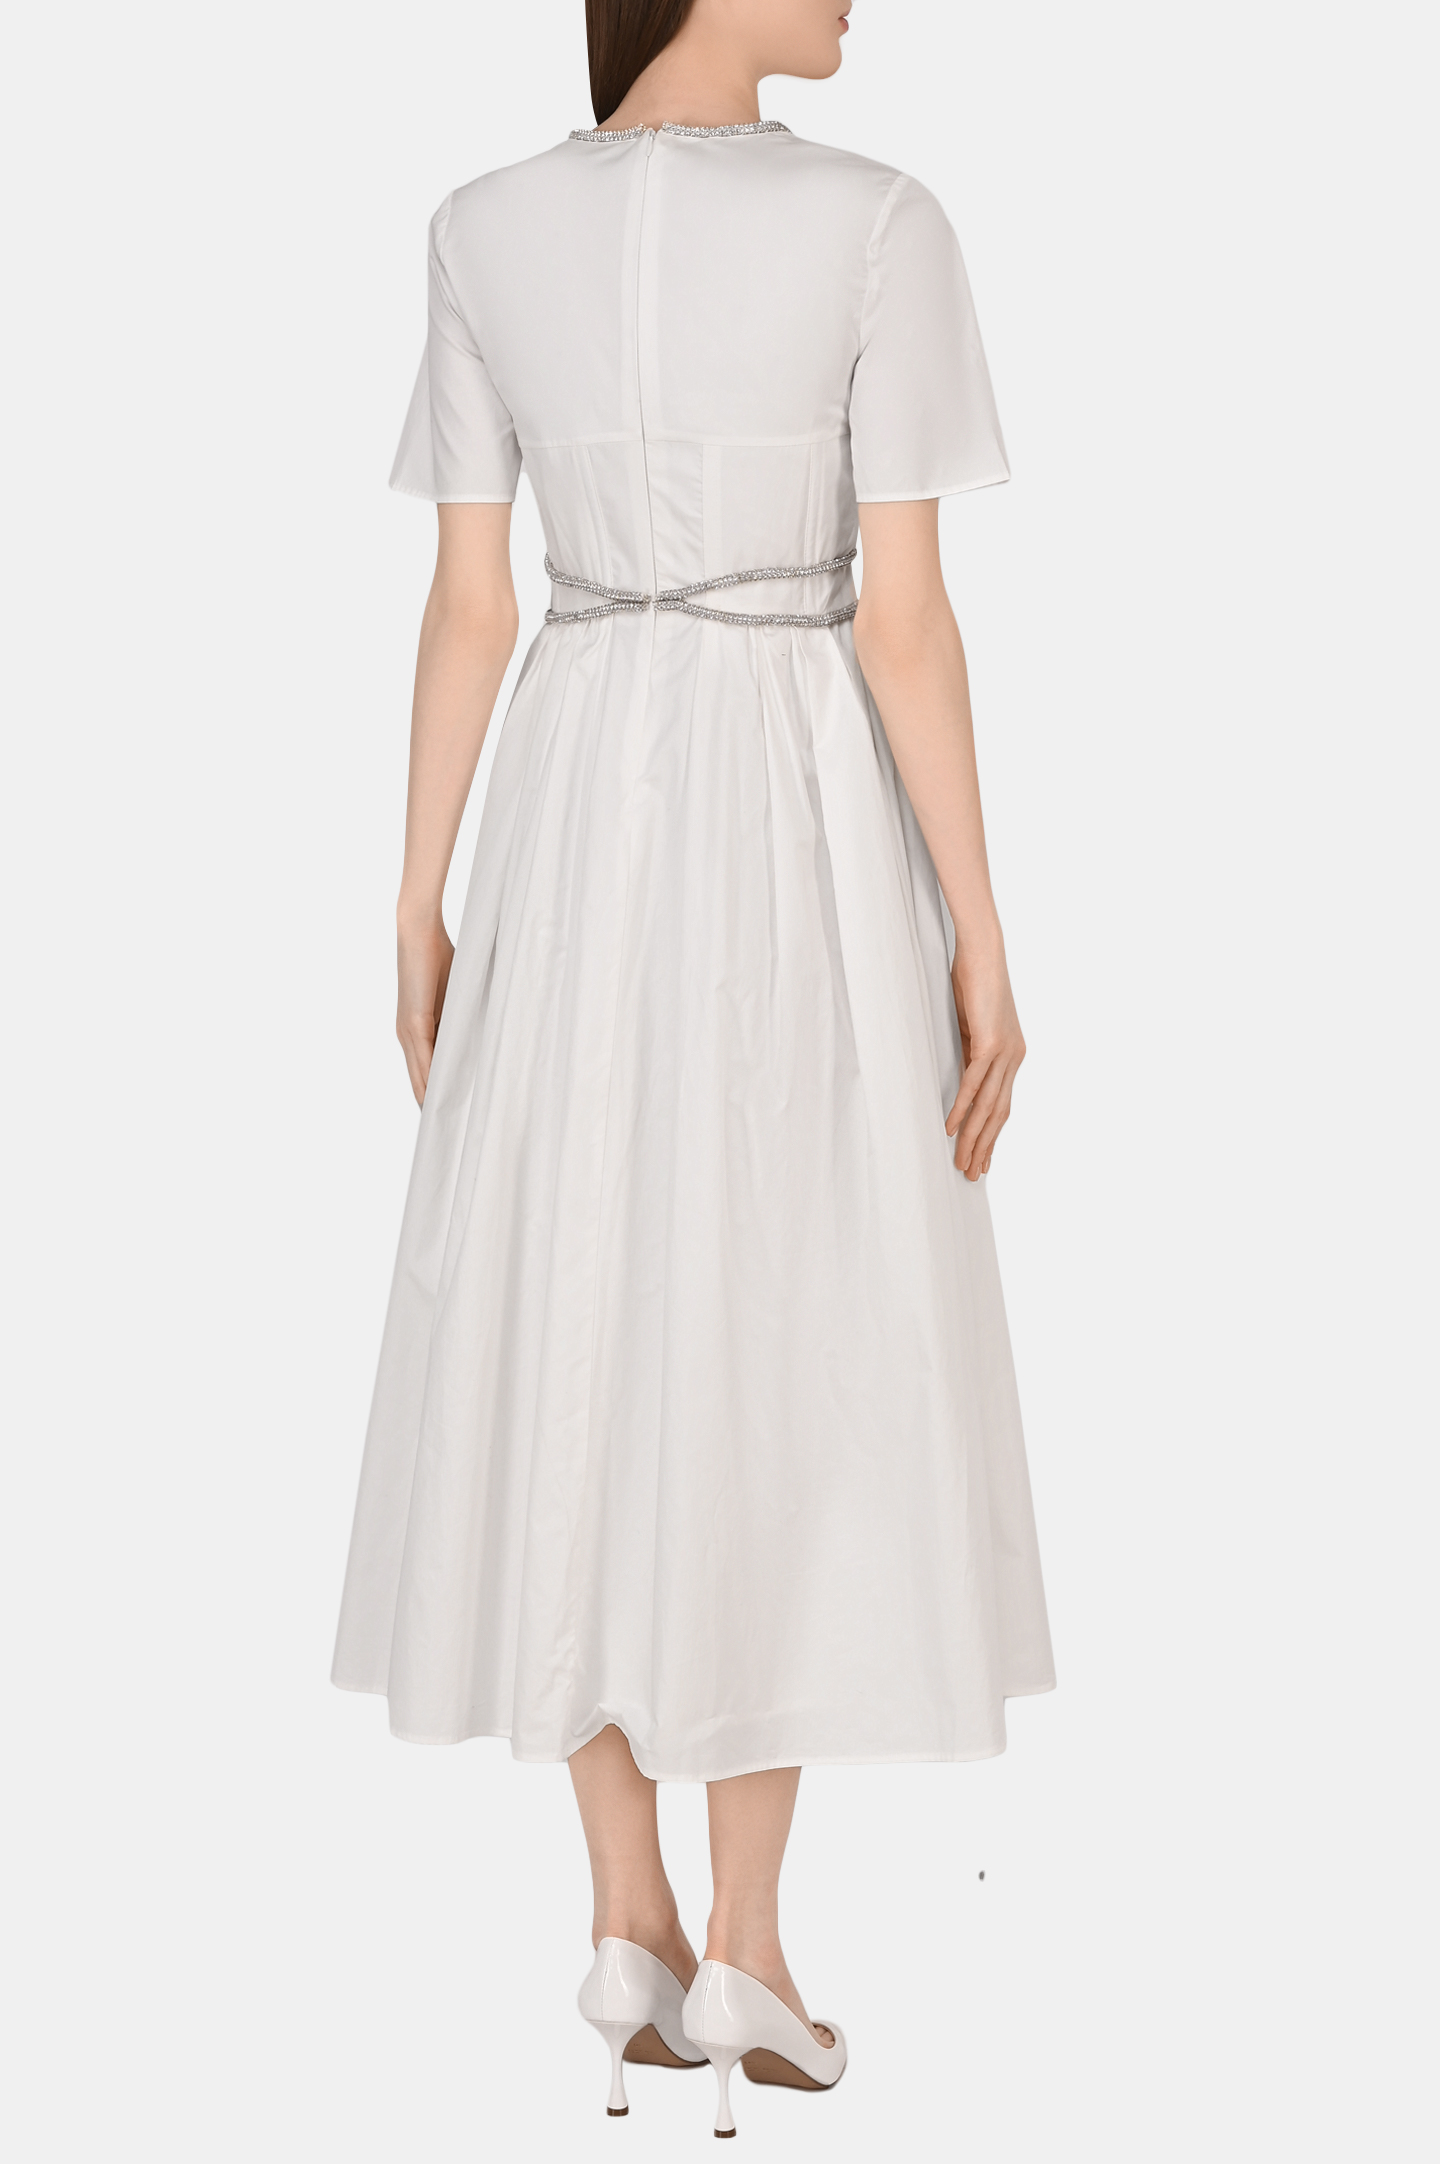 Платье SELF PORTRAIT RS22-040, цвет: Белый, Женский